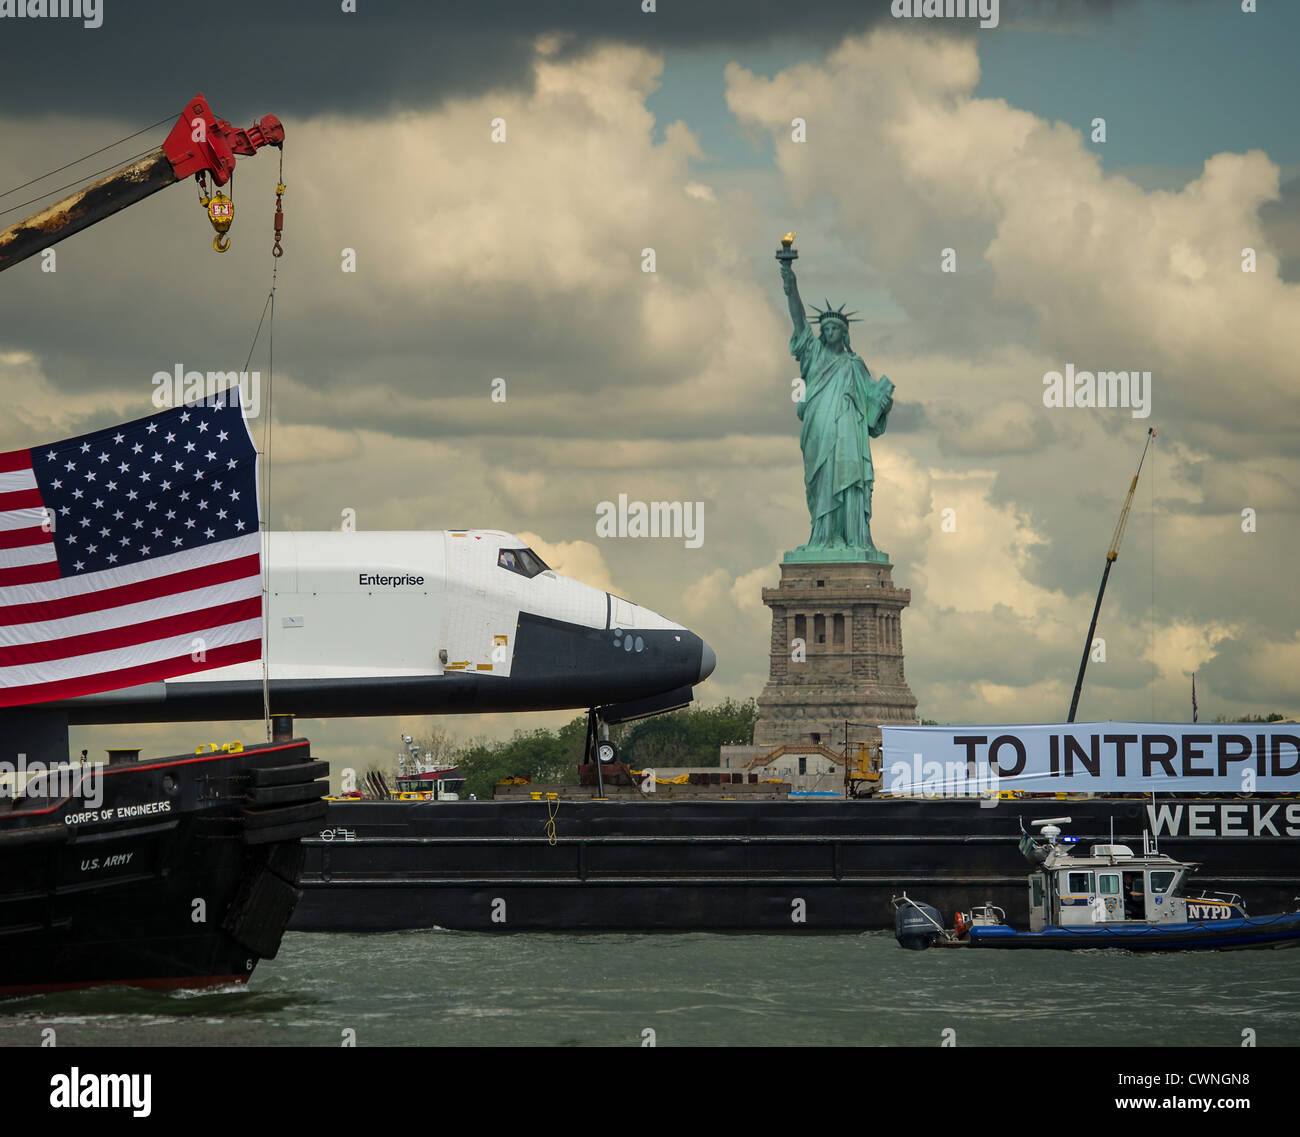 El transbordador espacial Enterprise, en la cima de una barcaza, pasa de la Estatua de la Libertad en Nueva York, en su camino a la intrépida Mar, Museo del Aire y el espacio, el 6 de junio de 2012. Foto de stock